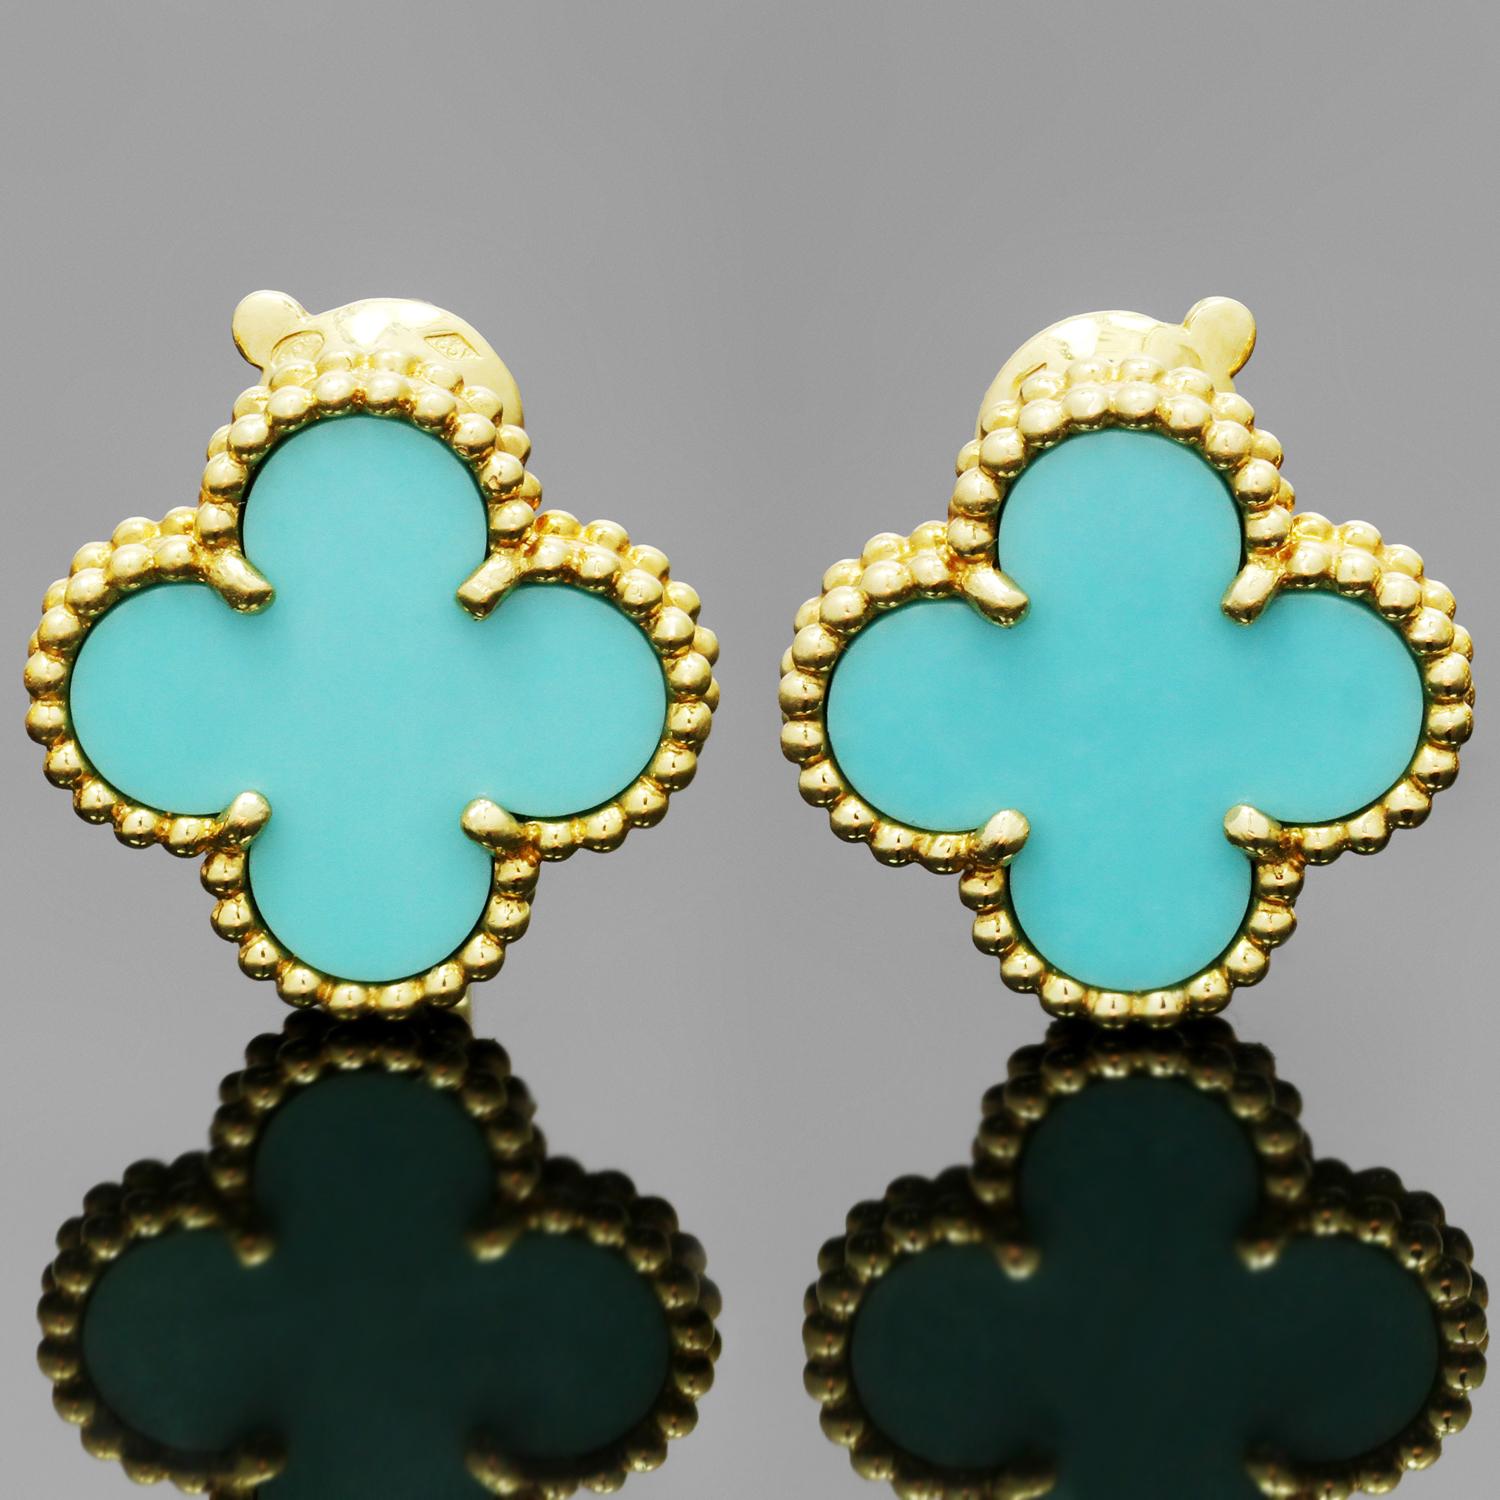 van cleef alhambra turquoise earrings